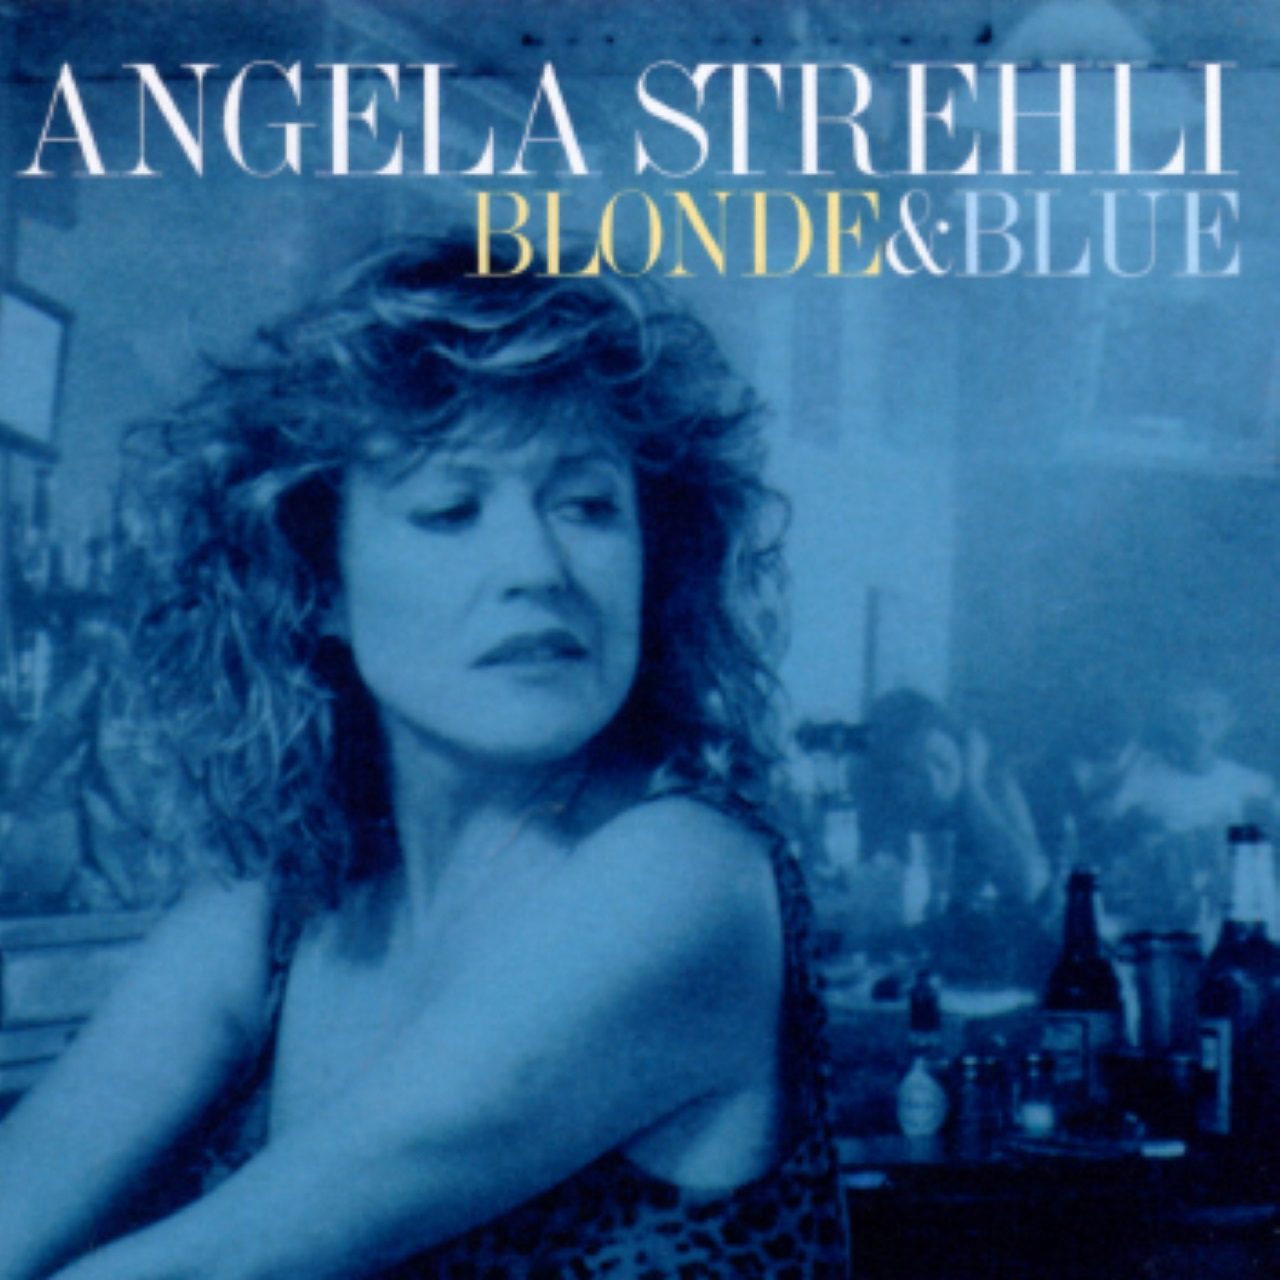 Angela Strehli – Blonde And Blue cover album